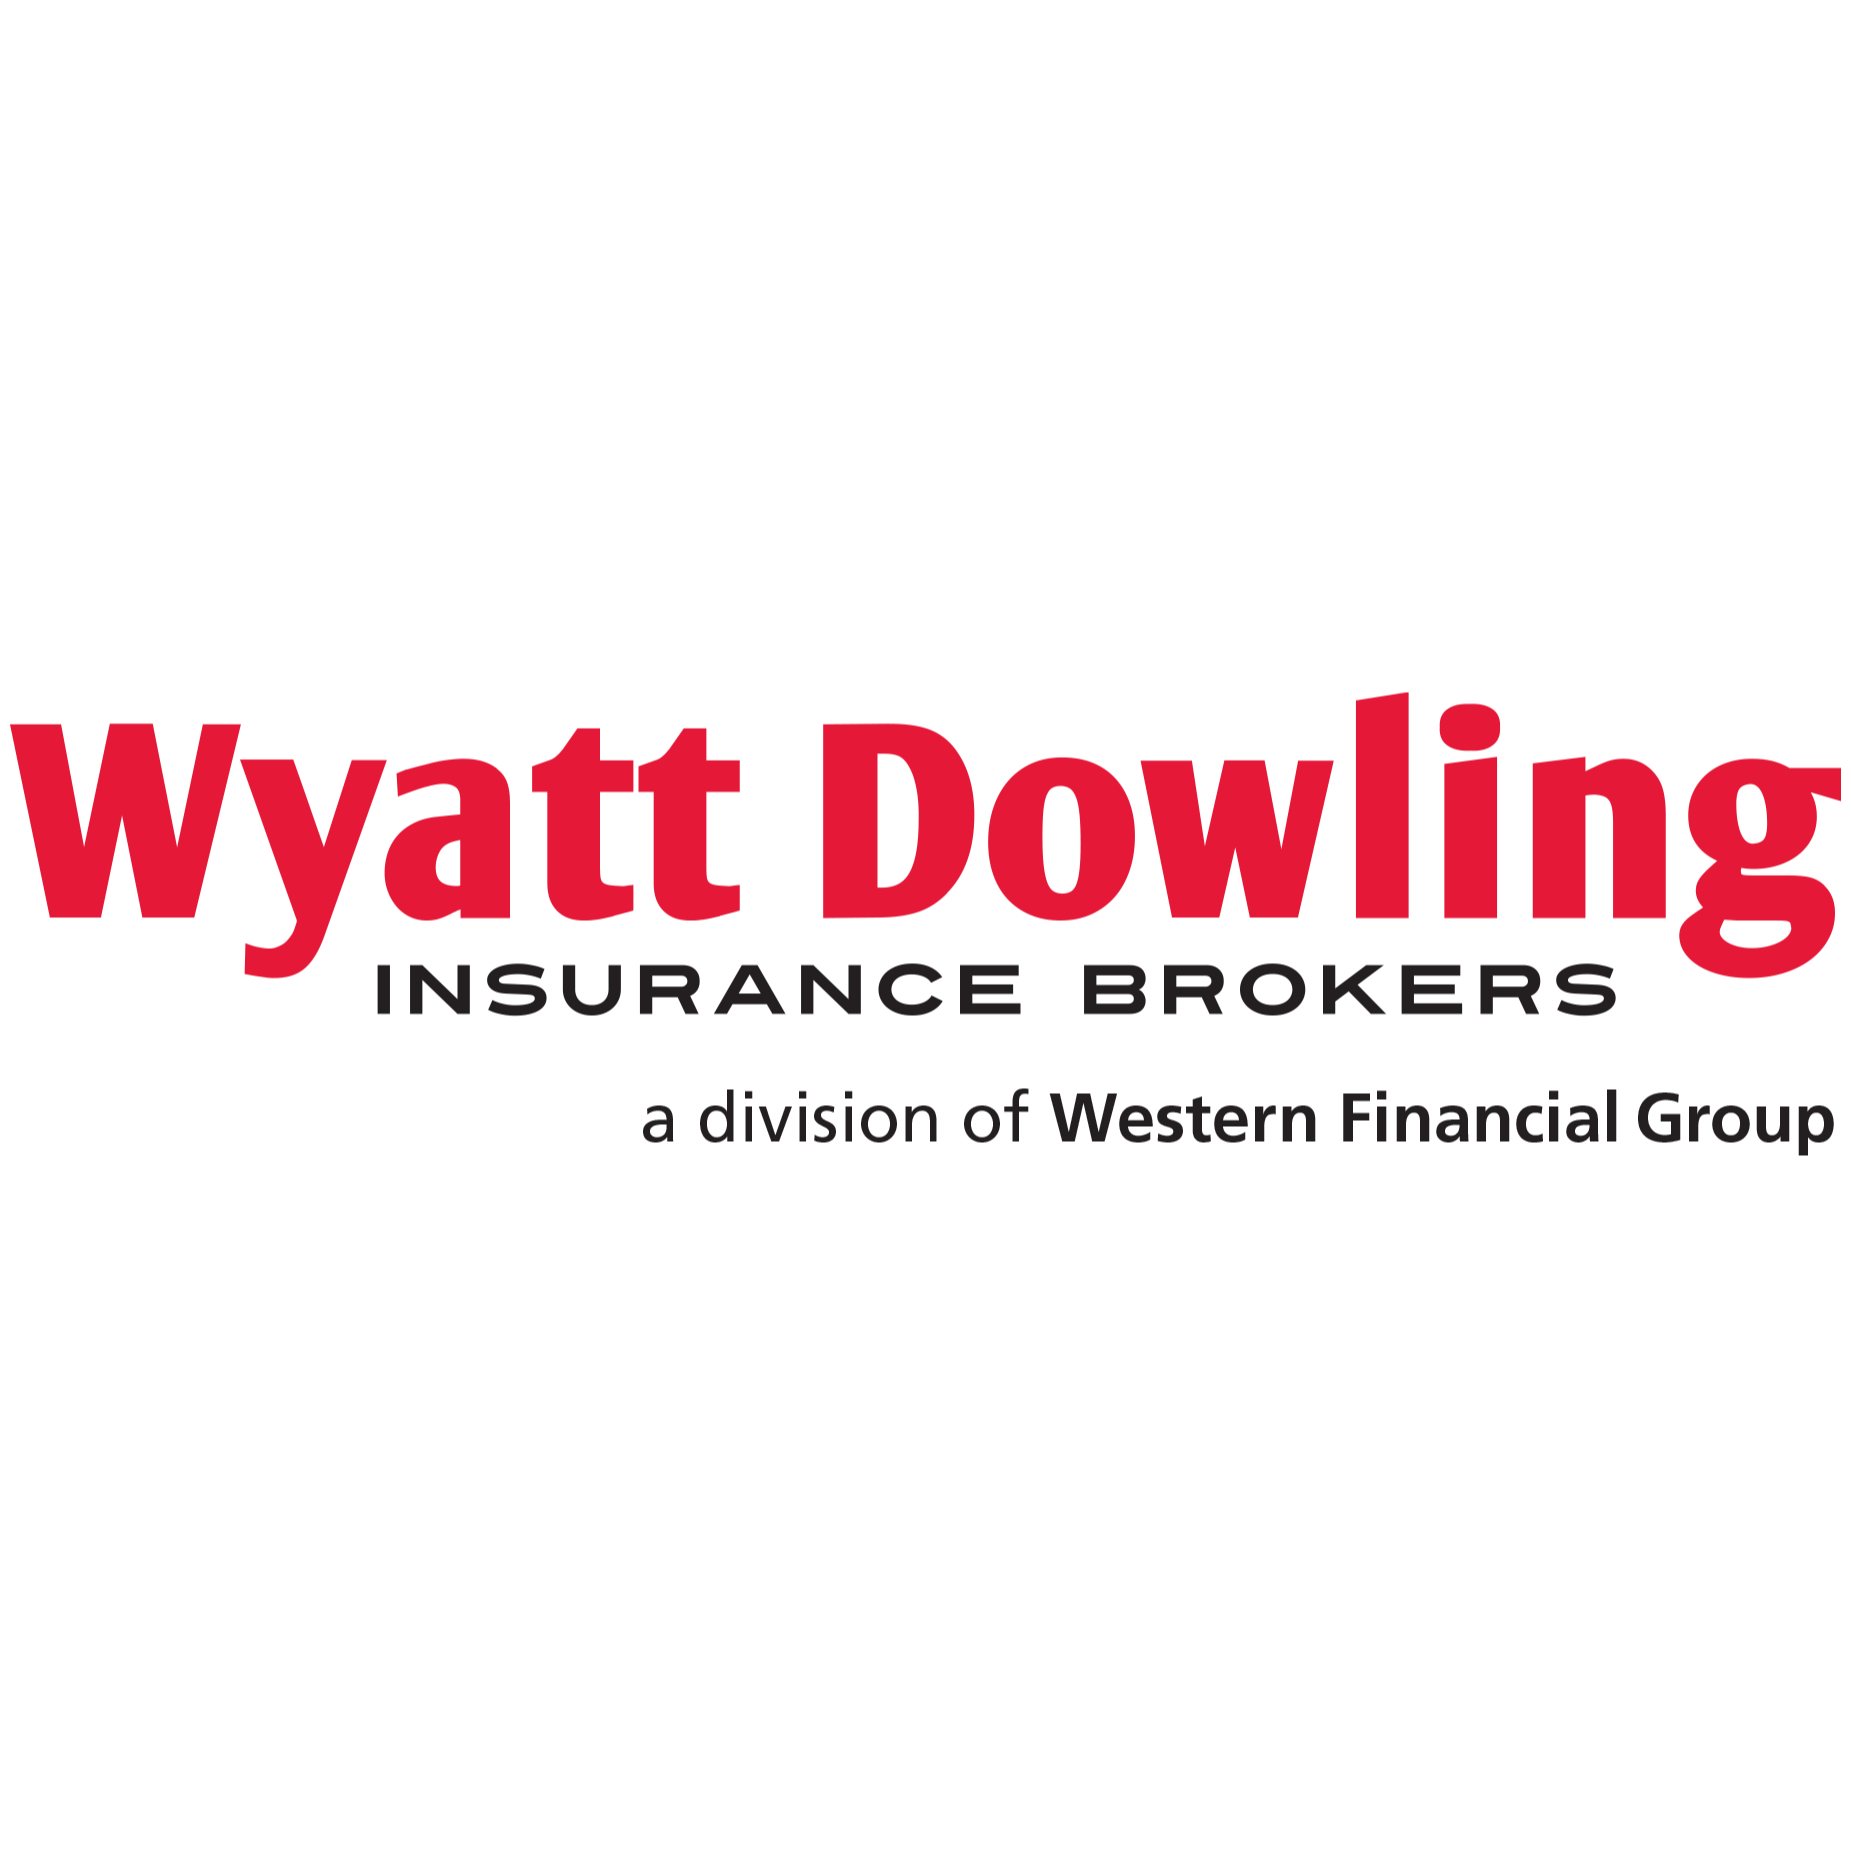 Wyatt Dowling Insurance Brokers - Courtiers en assurance